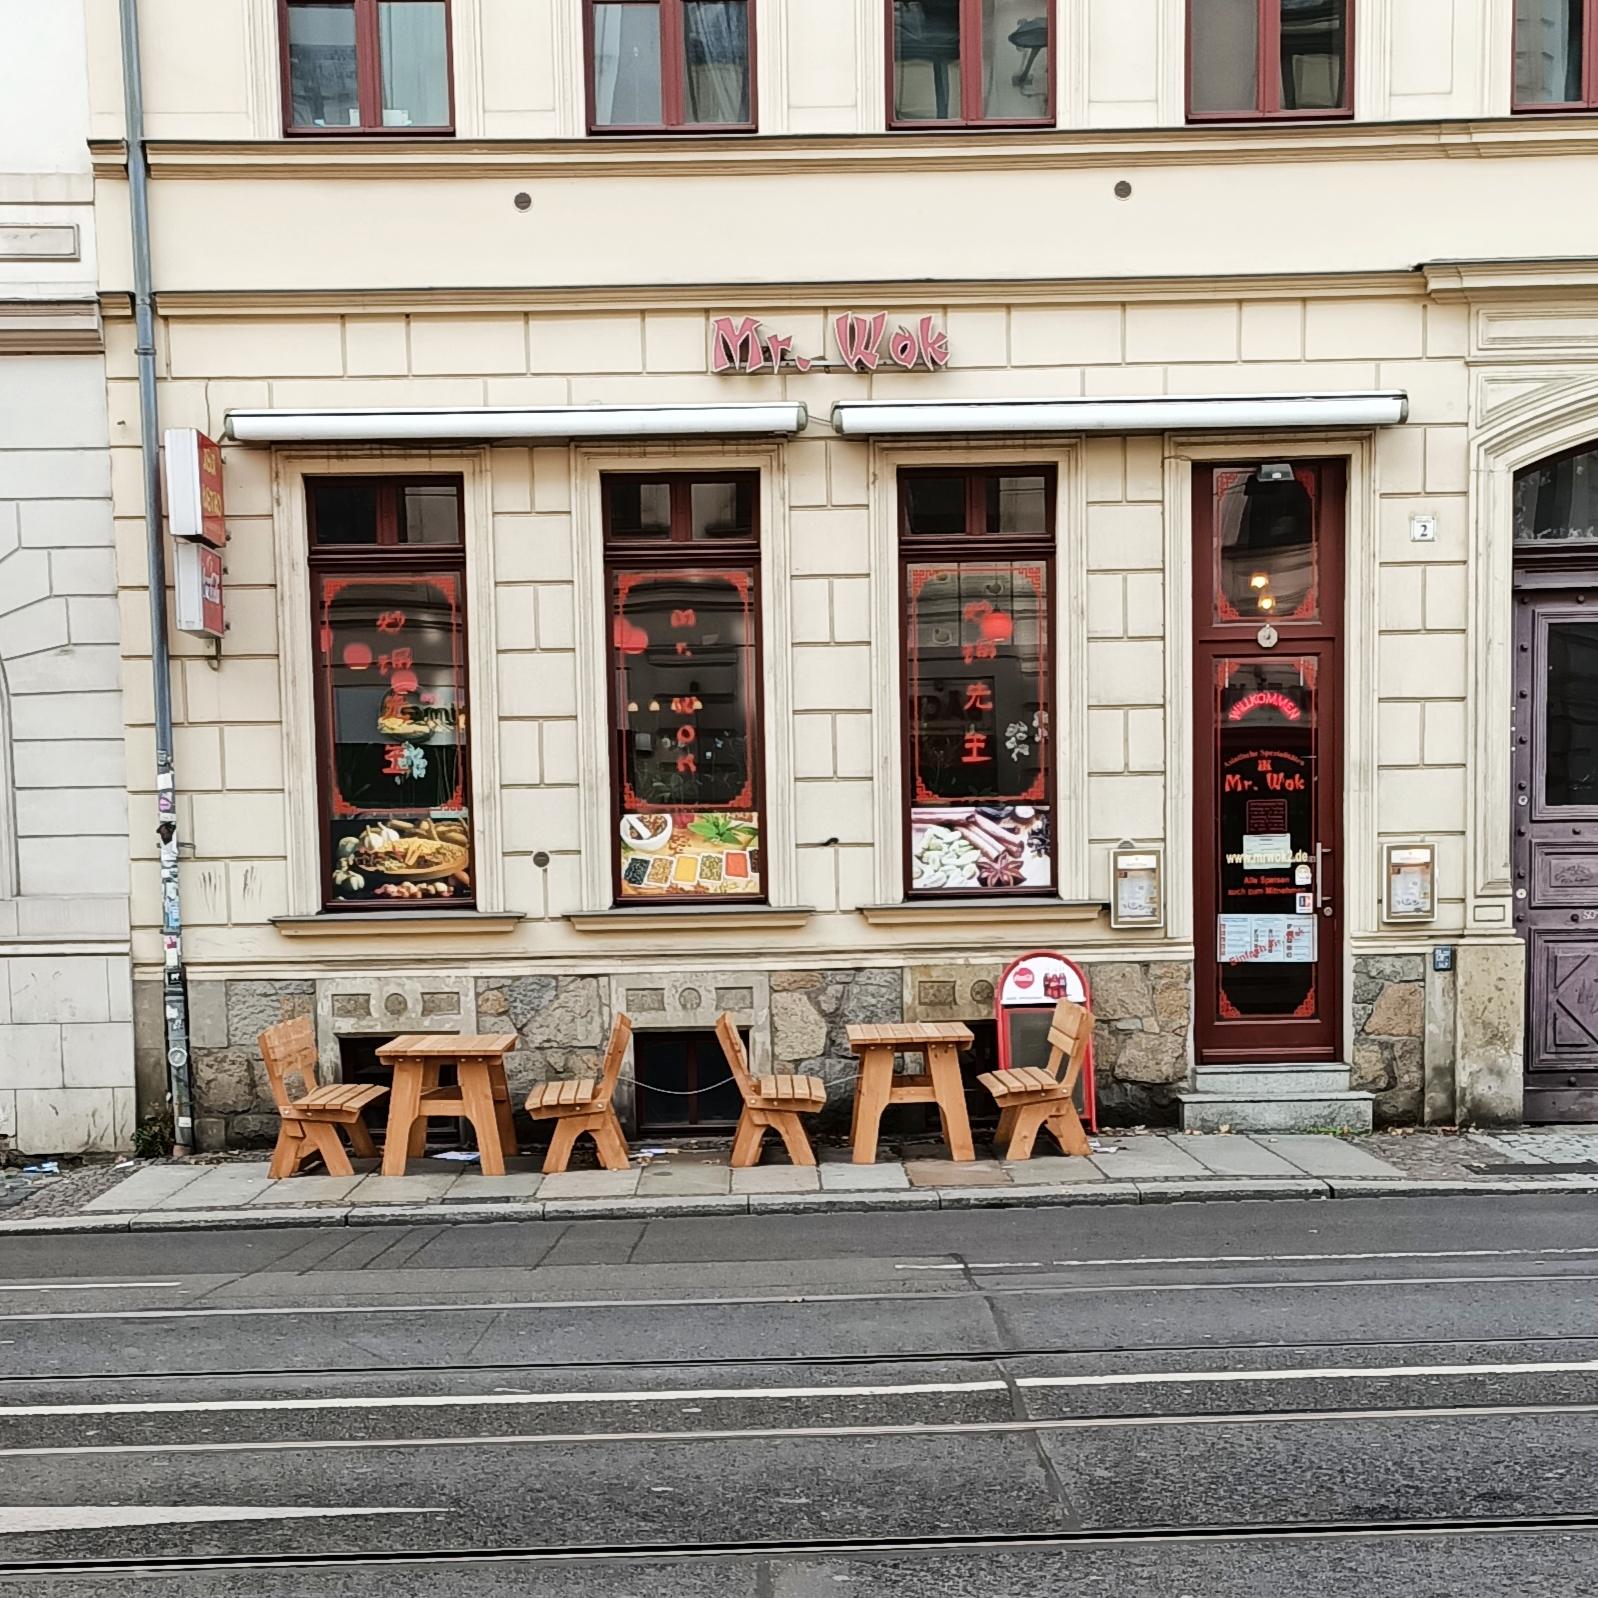 Restaurant "Asia-Bistro Mr. Wok 2" in Leipzig